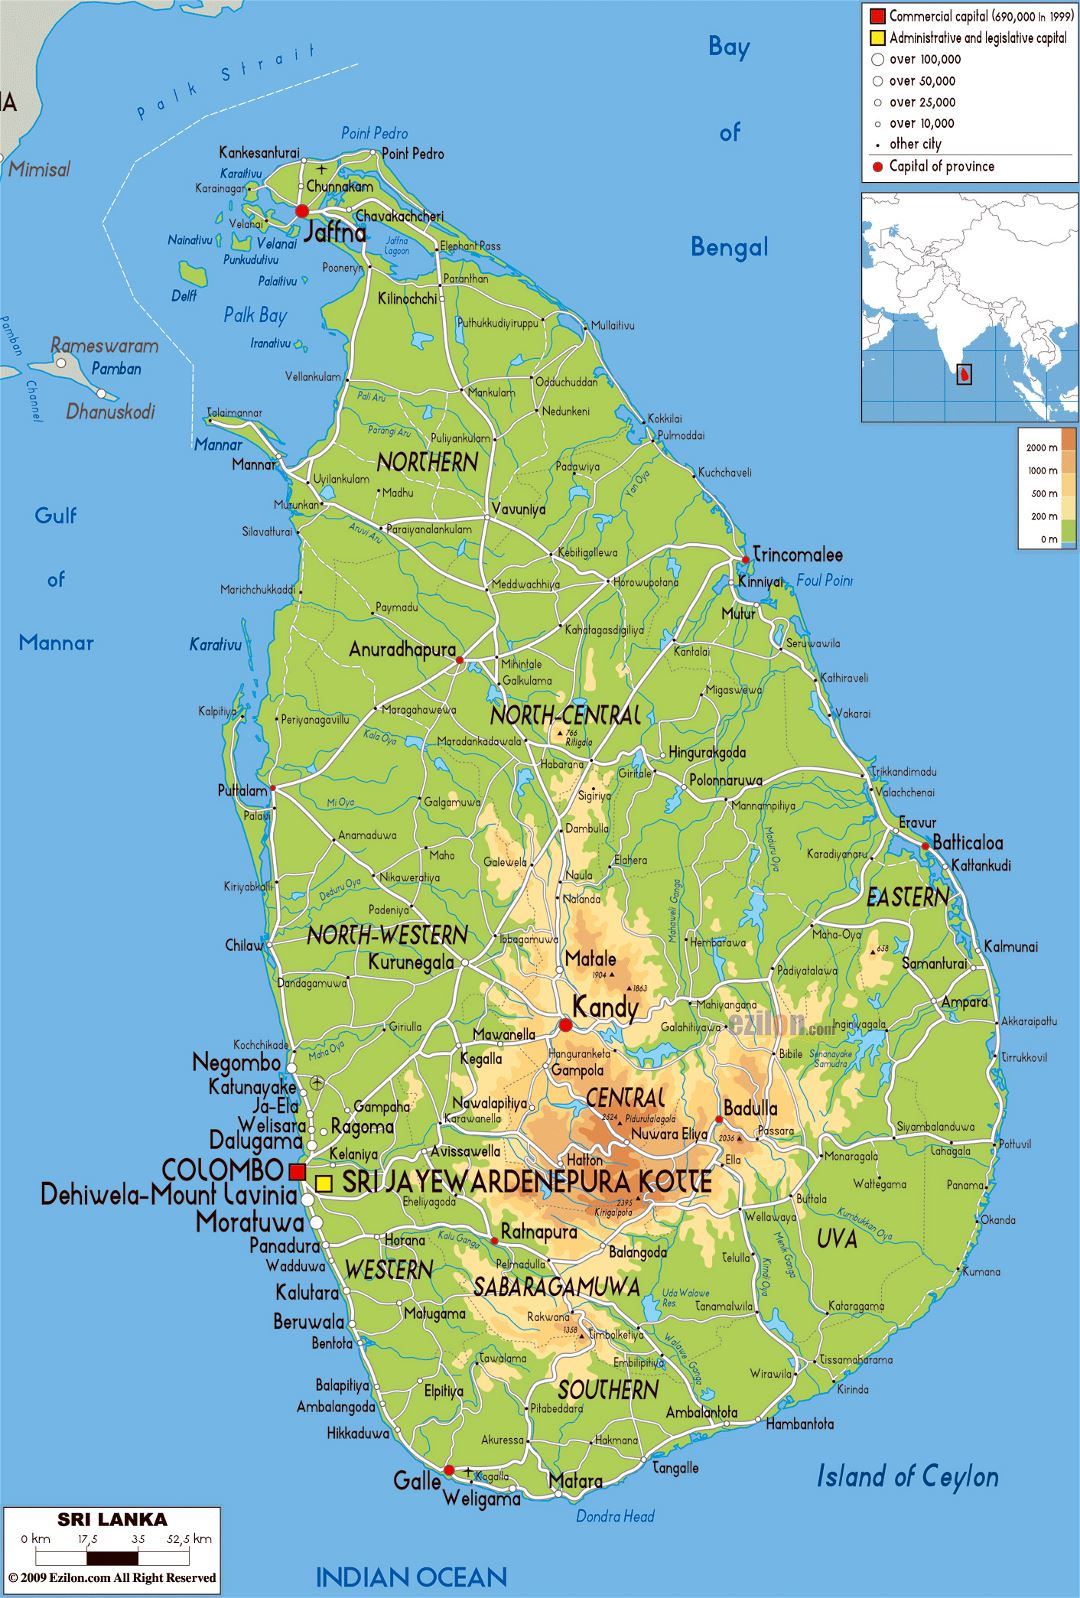 Grande mapa físico de Sri Lanka con carreteras, ciudades y aeropuertos